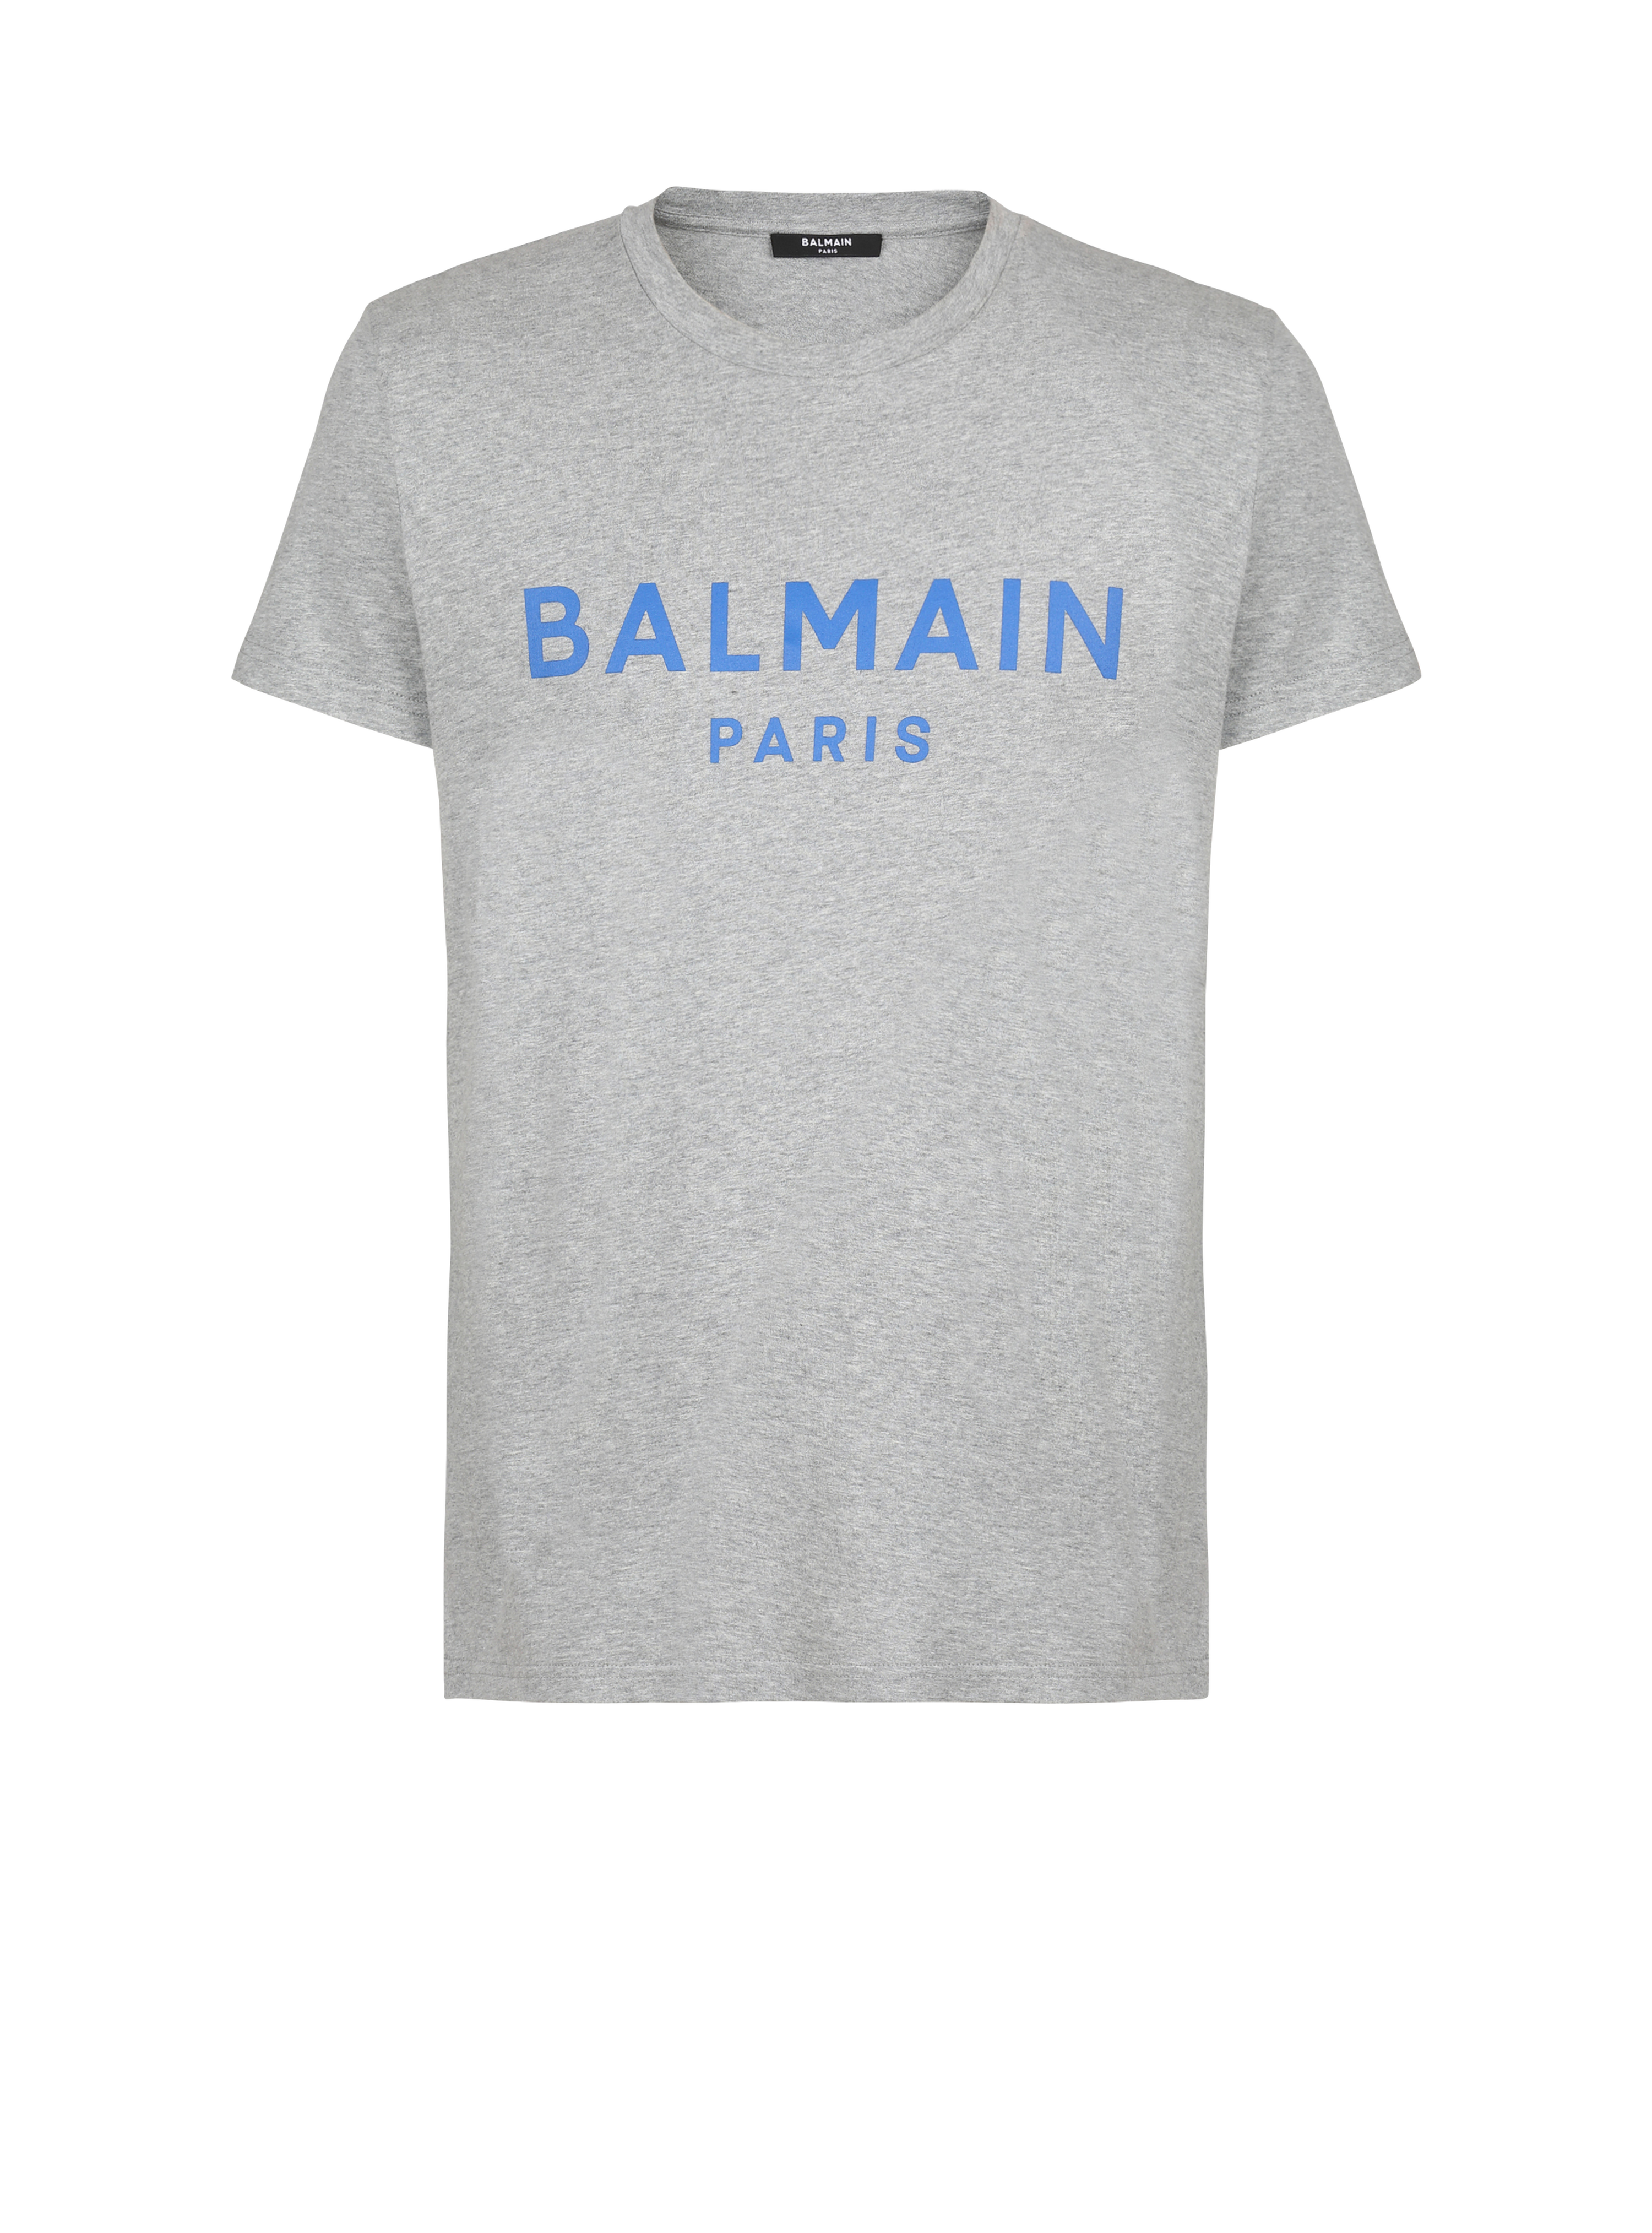 Cotton T-shirt with Balmain logo print, grey